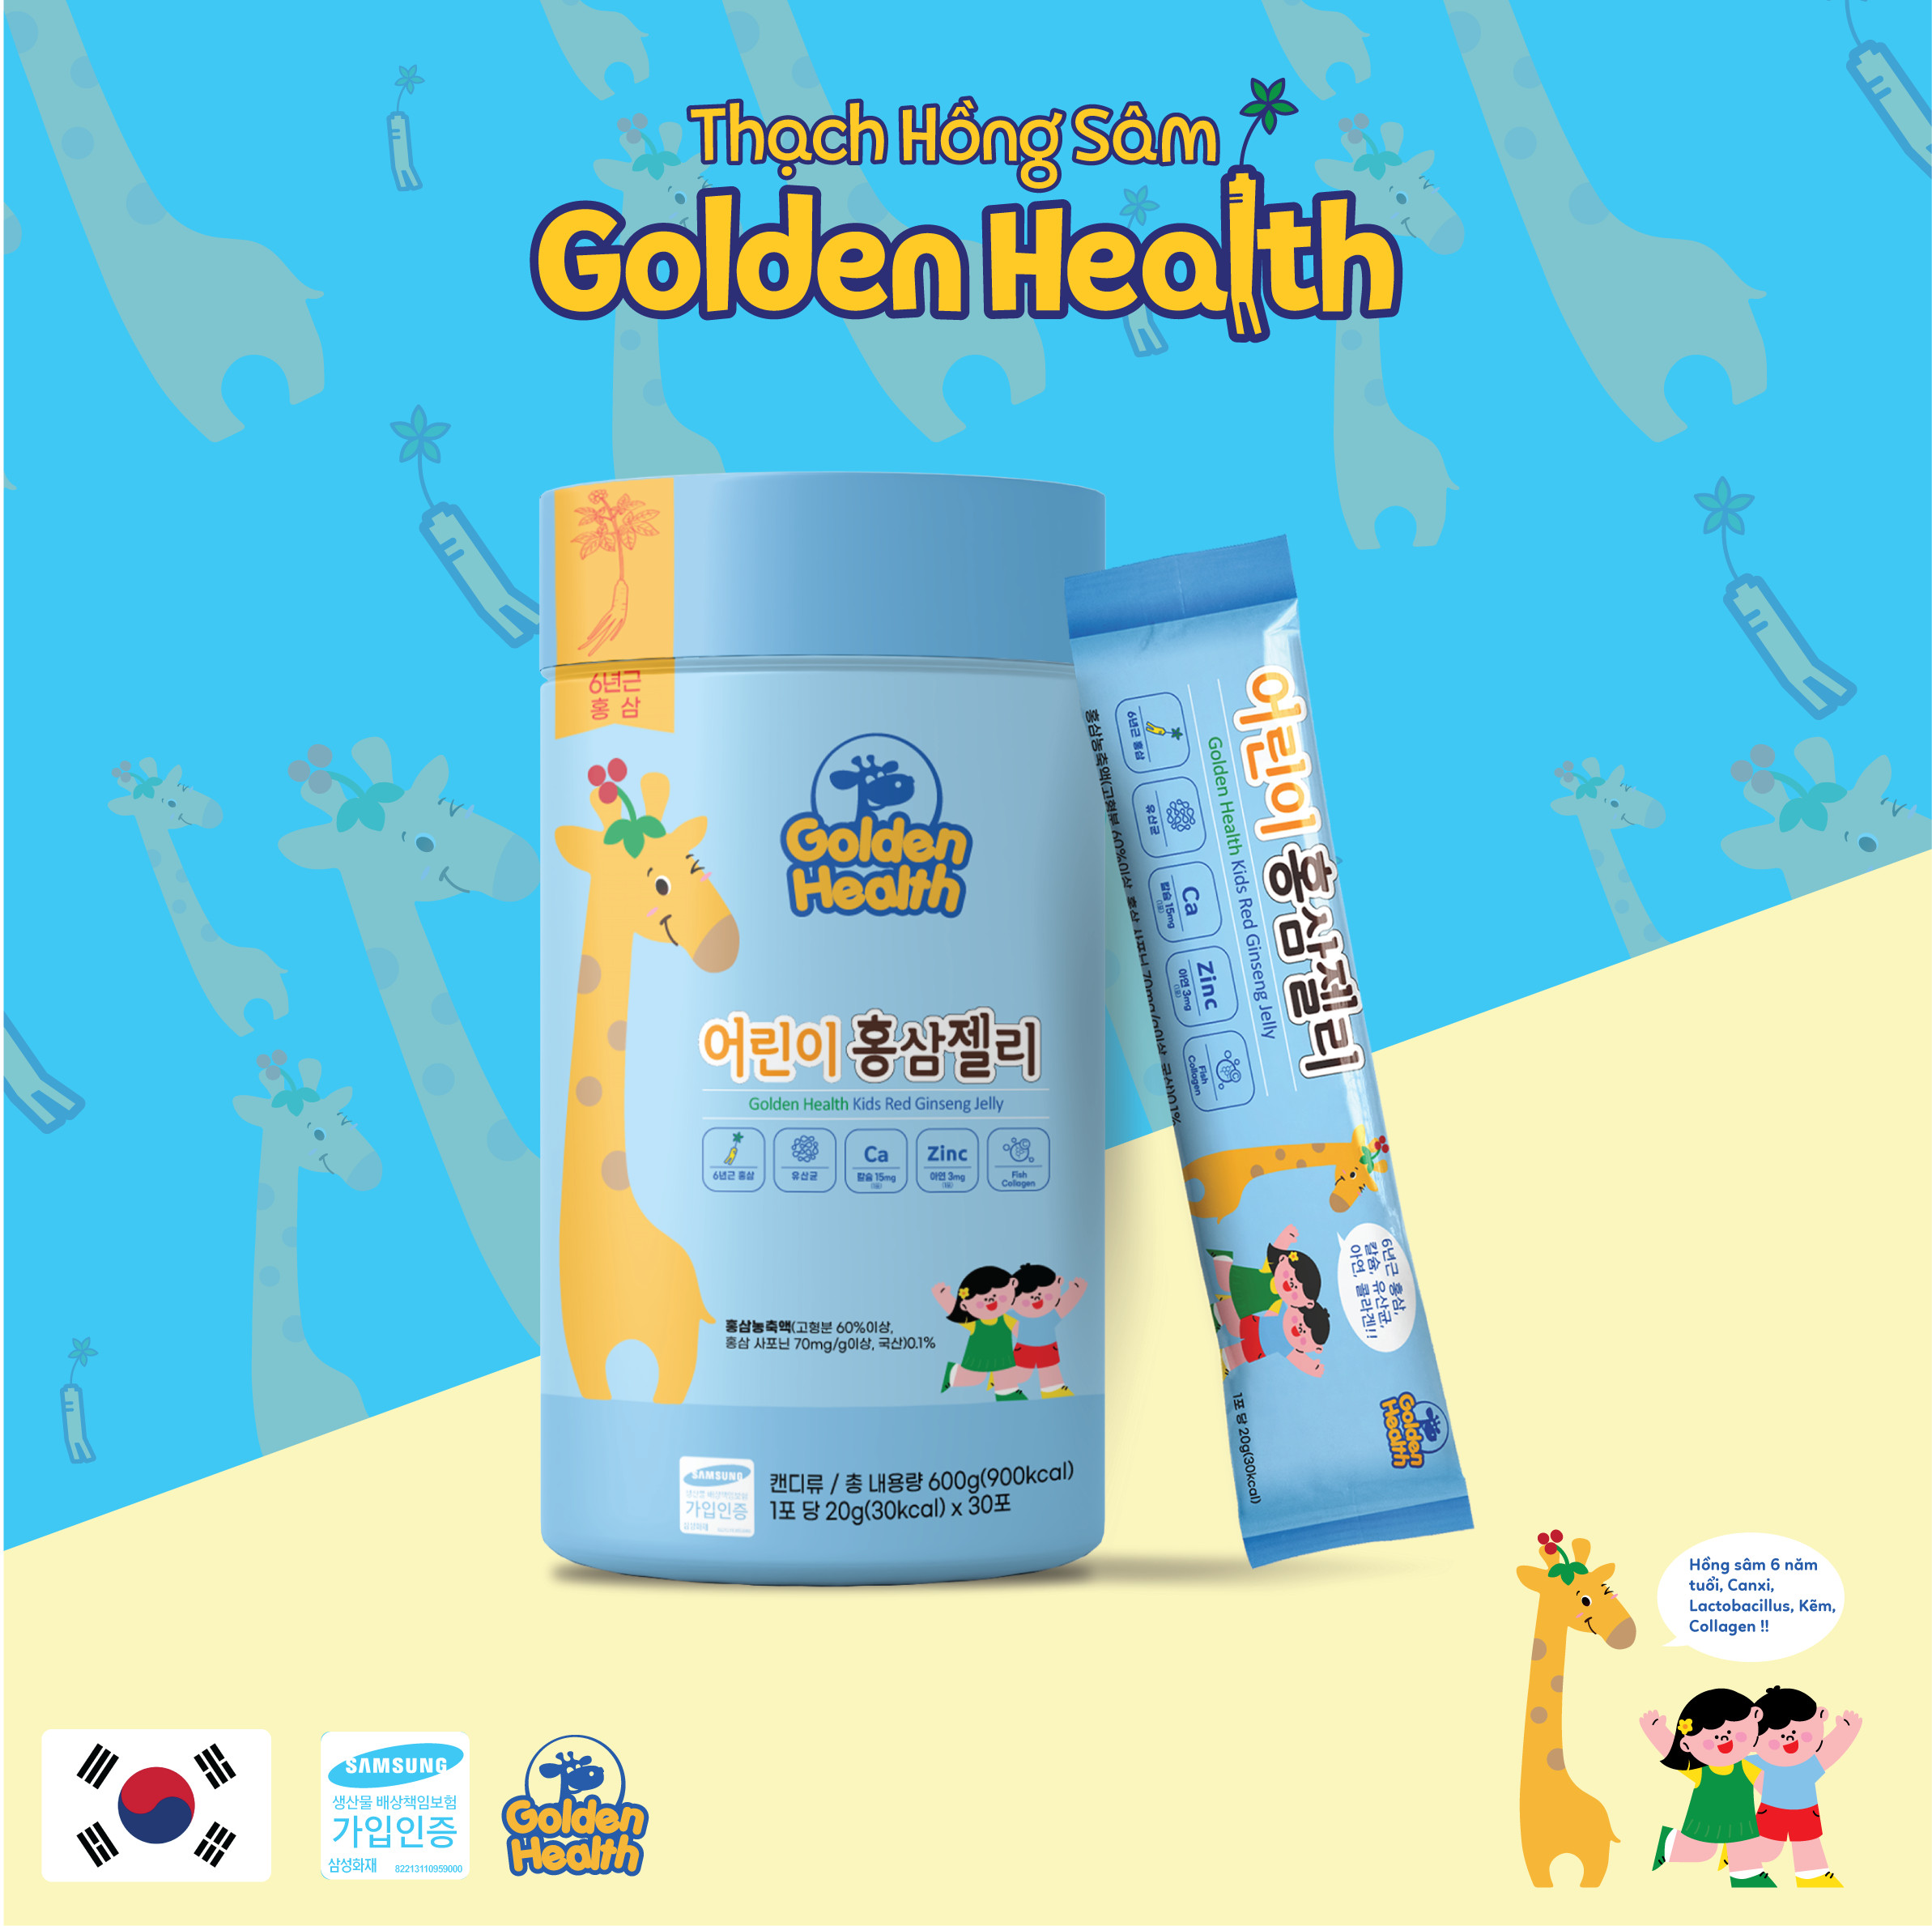 Thạch hồng sâm Golden Health 6 in 1 tăng chiều cao đề kháng cho bé nhập khẩu Hàn Quốc hộp 30 gói